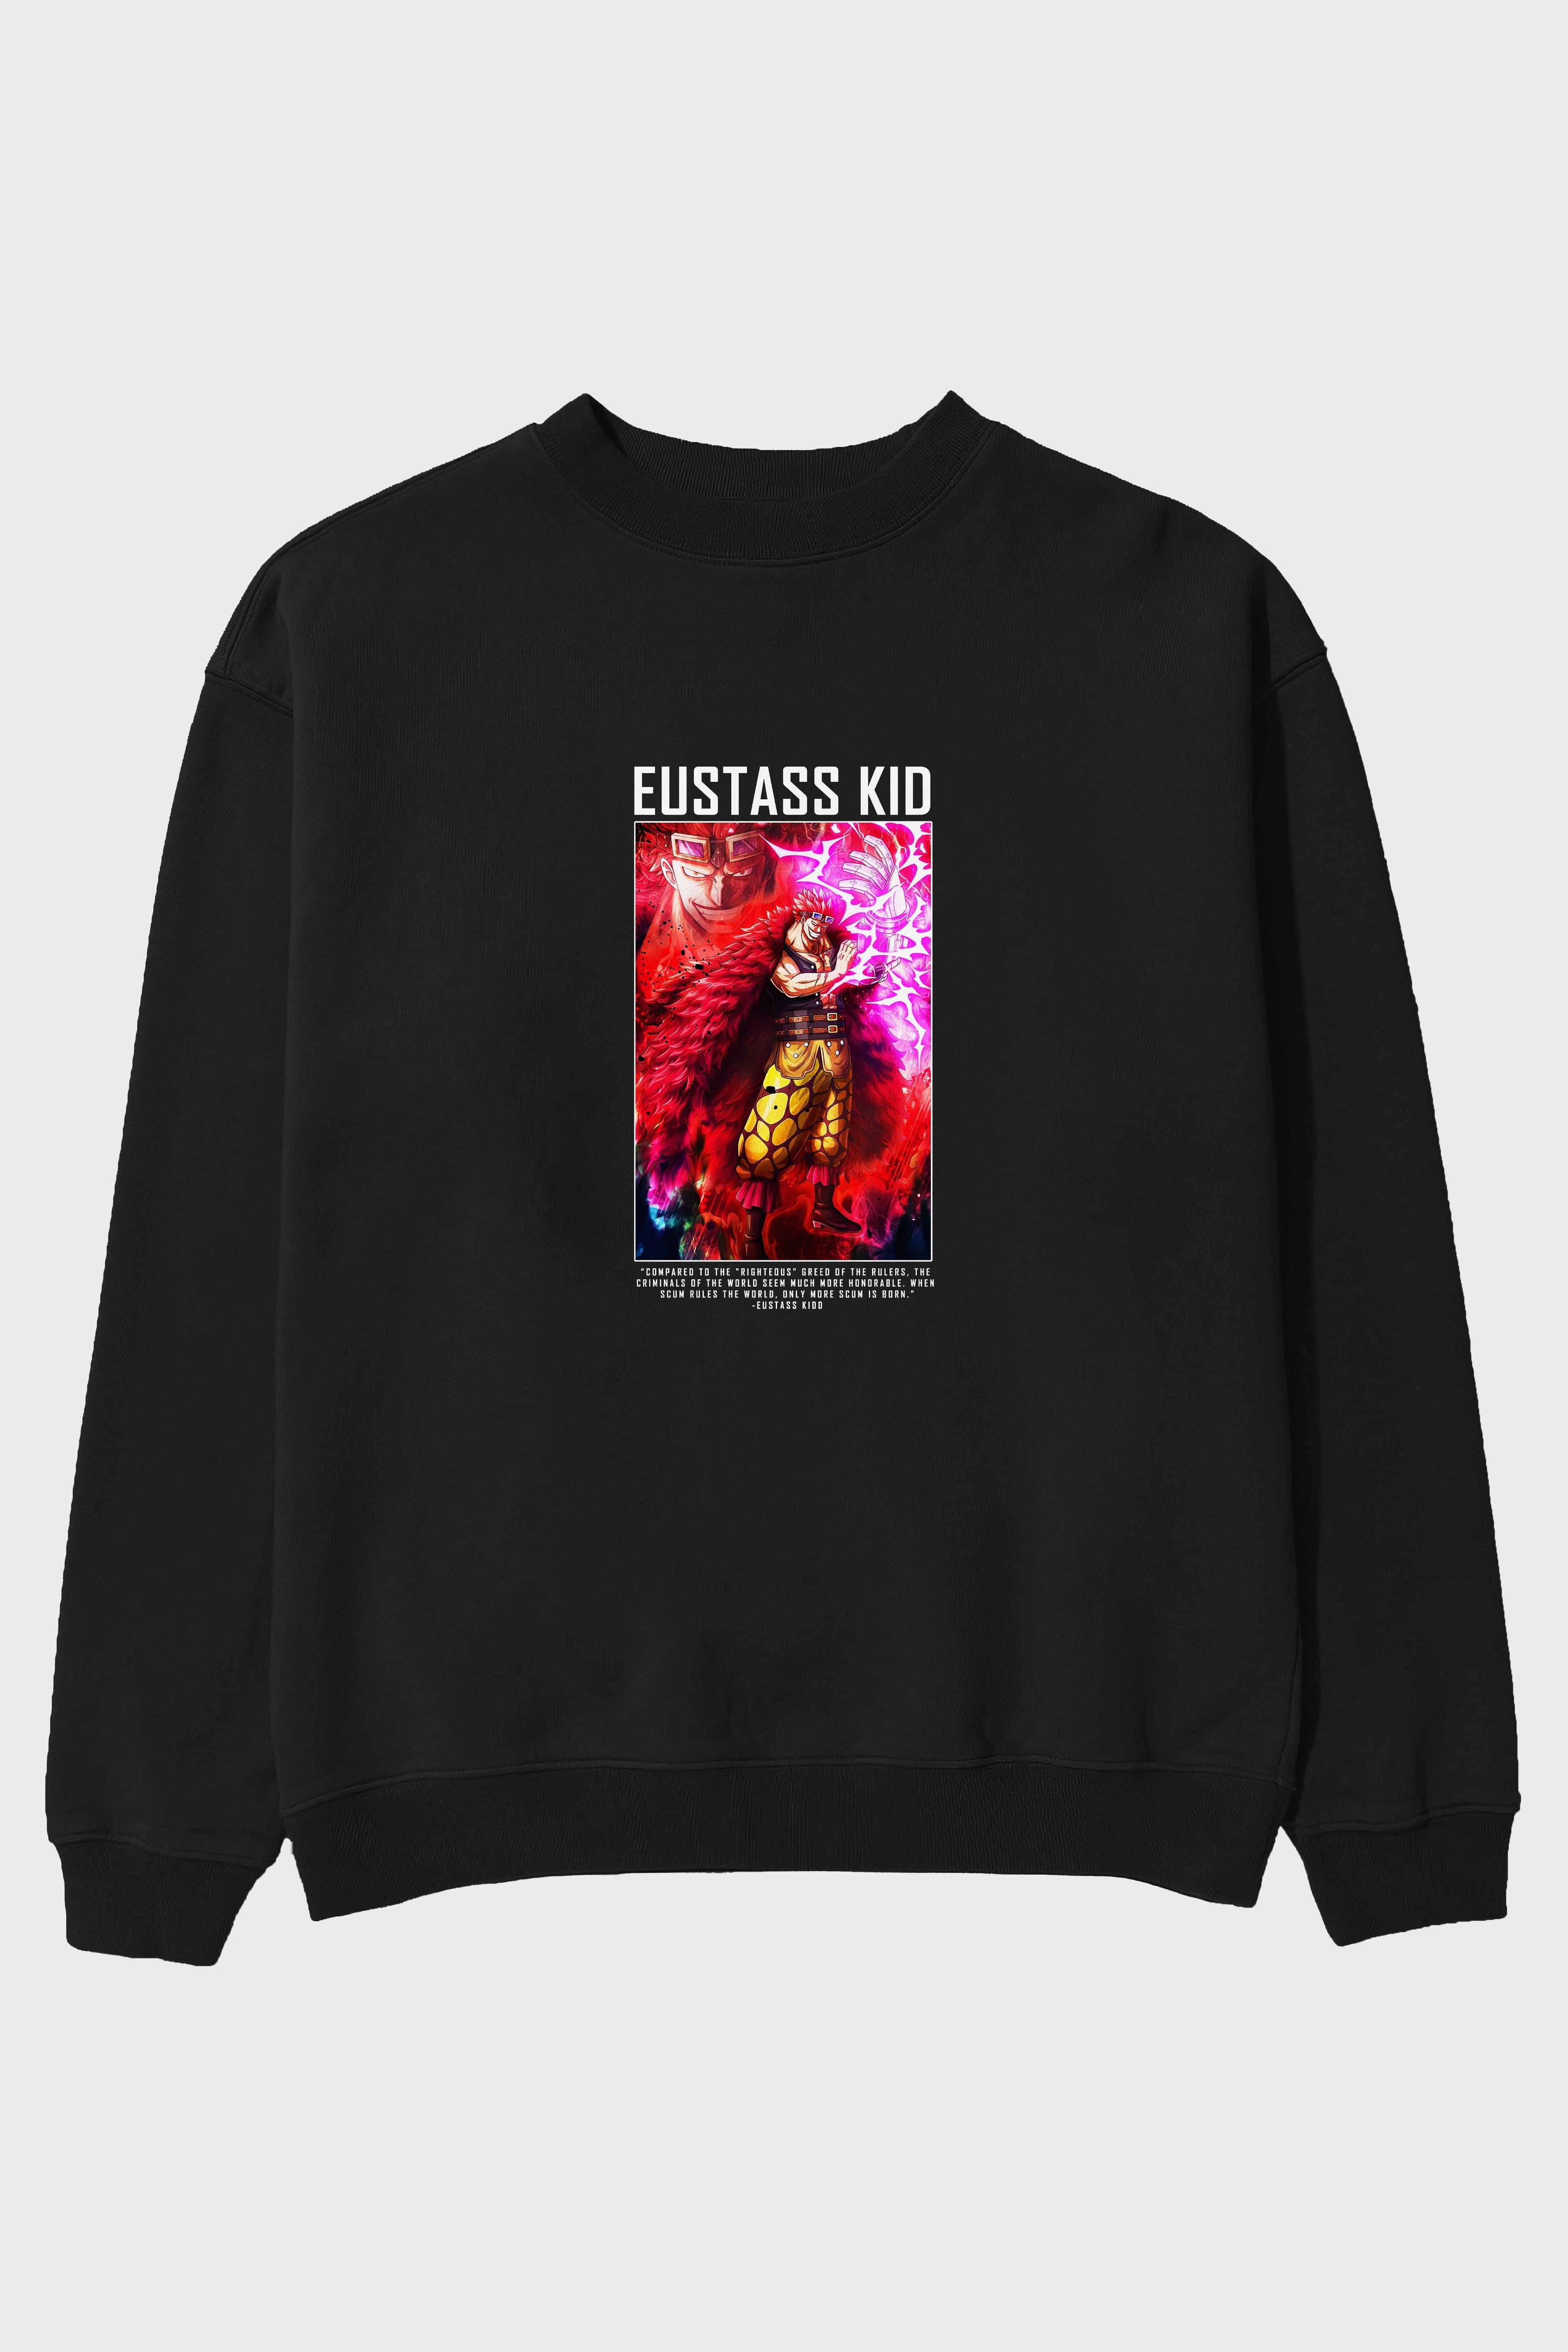 Eustass Kid Ön Baskılı Anime Oversize Sweatshirt Erkek Kadın Unisex